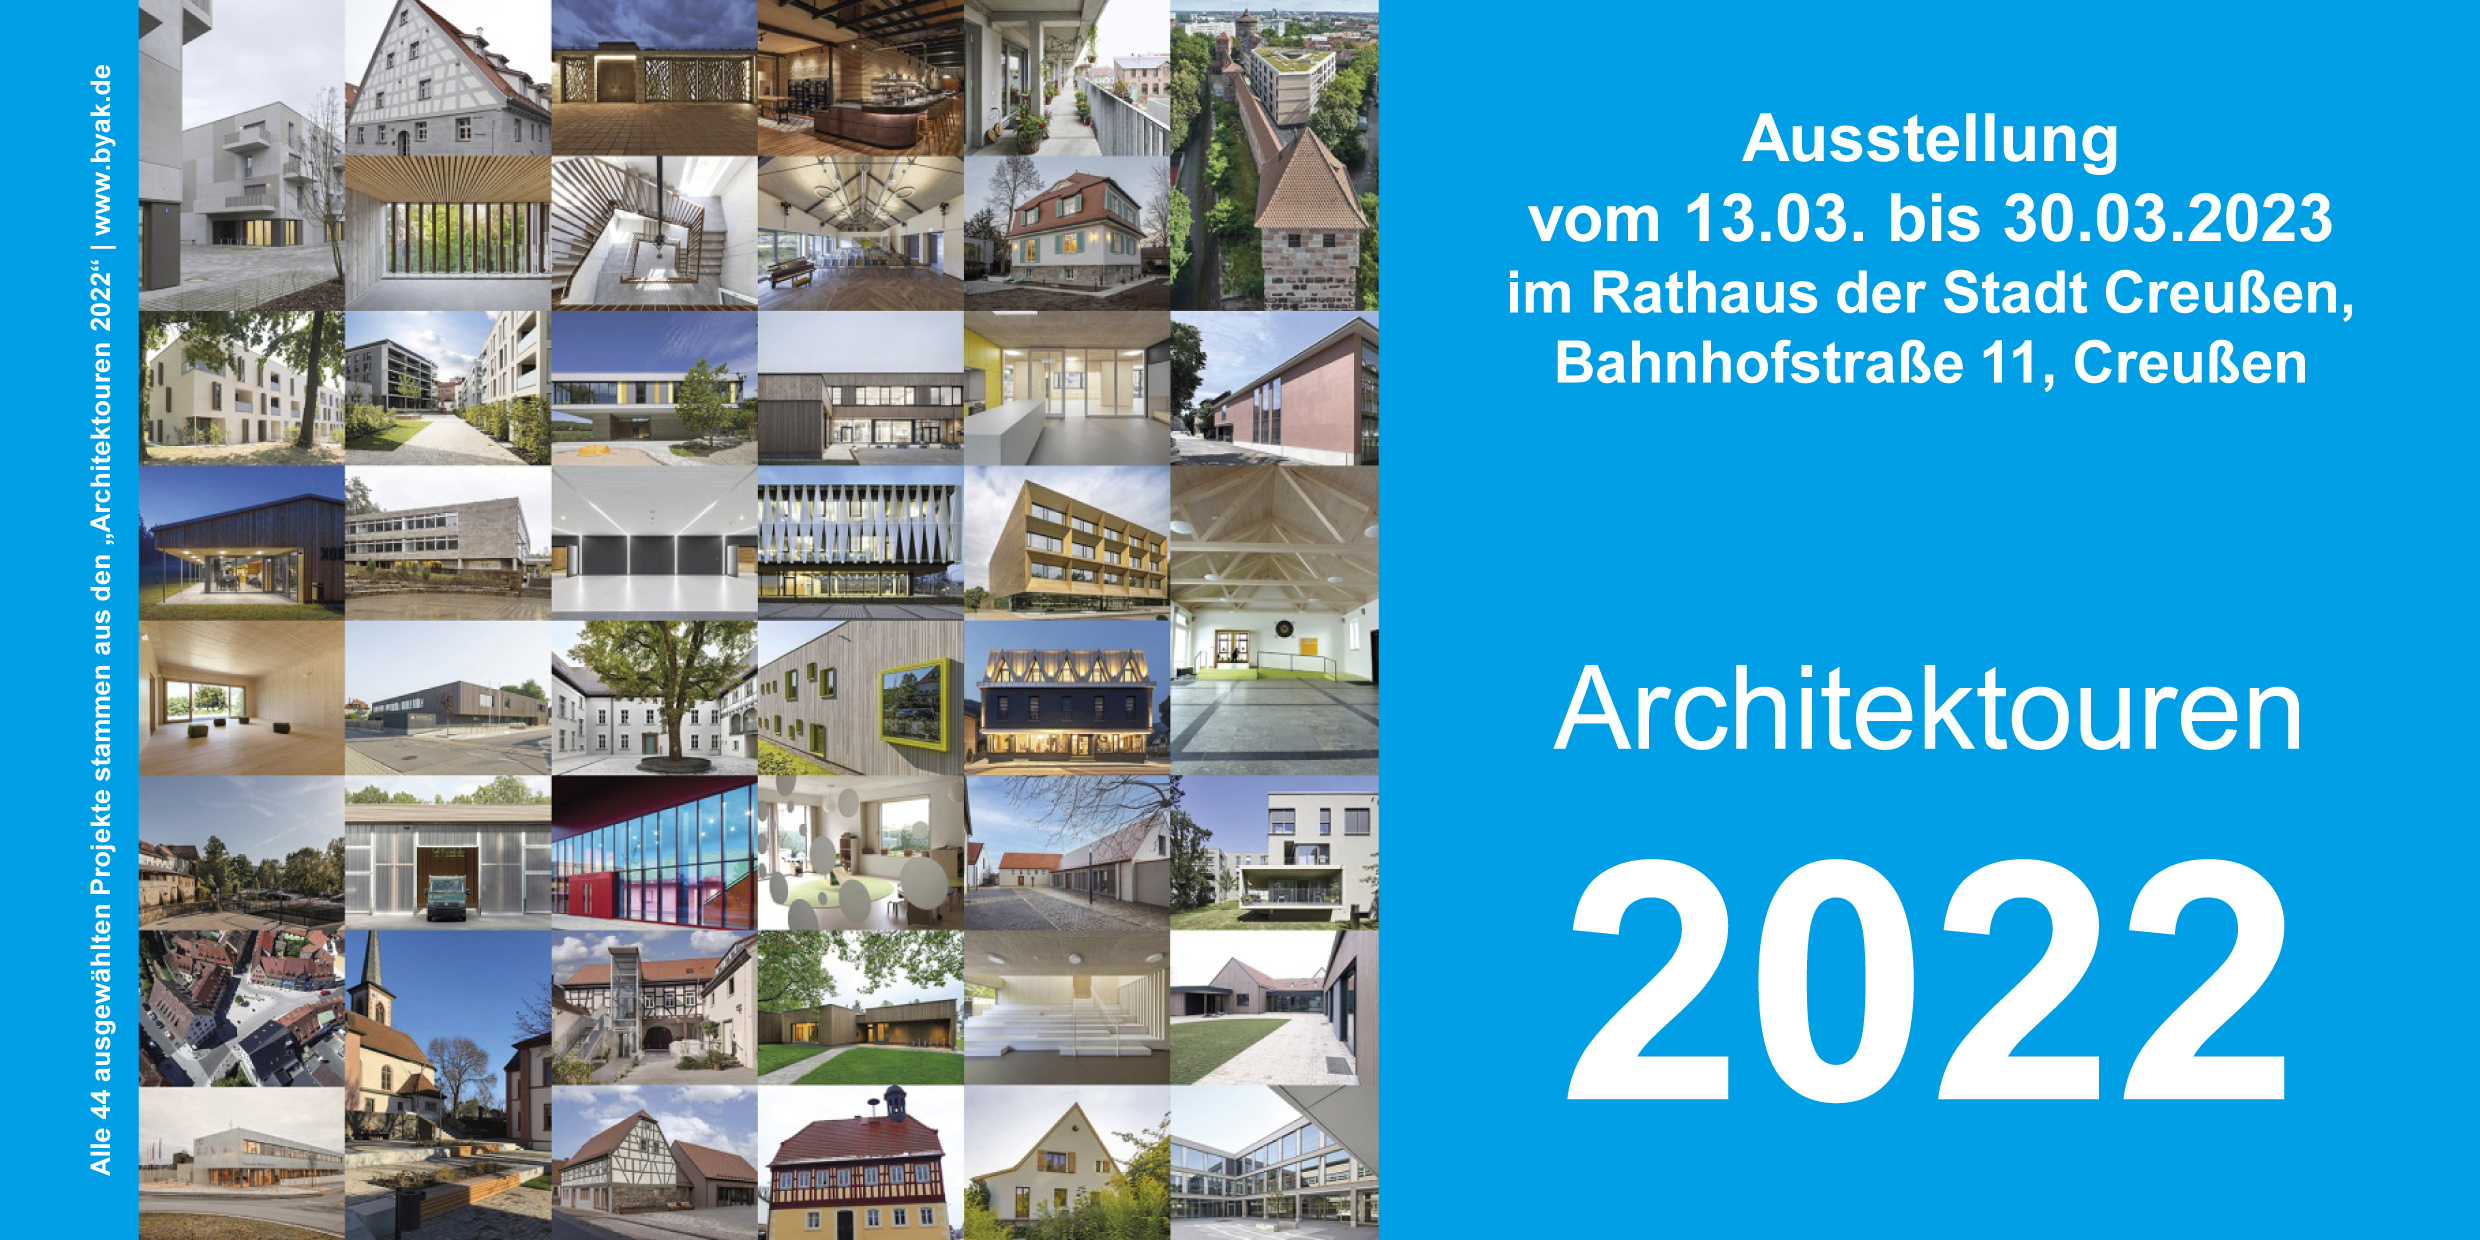 Ausstellung: Architektouren 2022 @ Rathaus Creußen